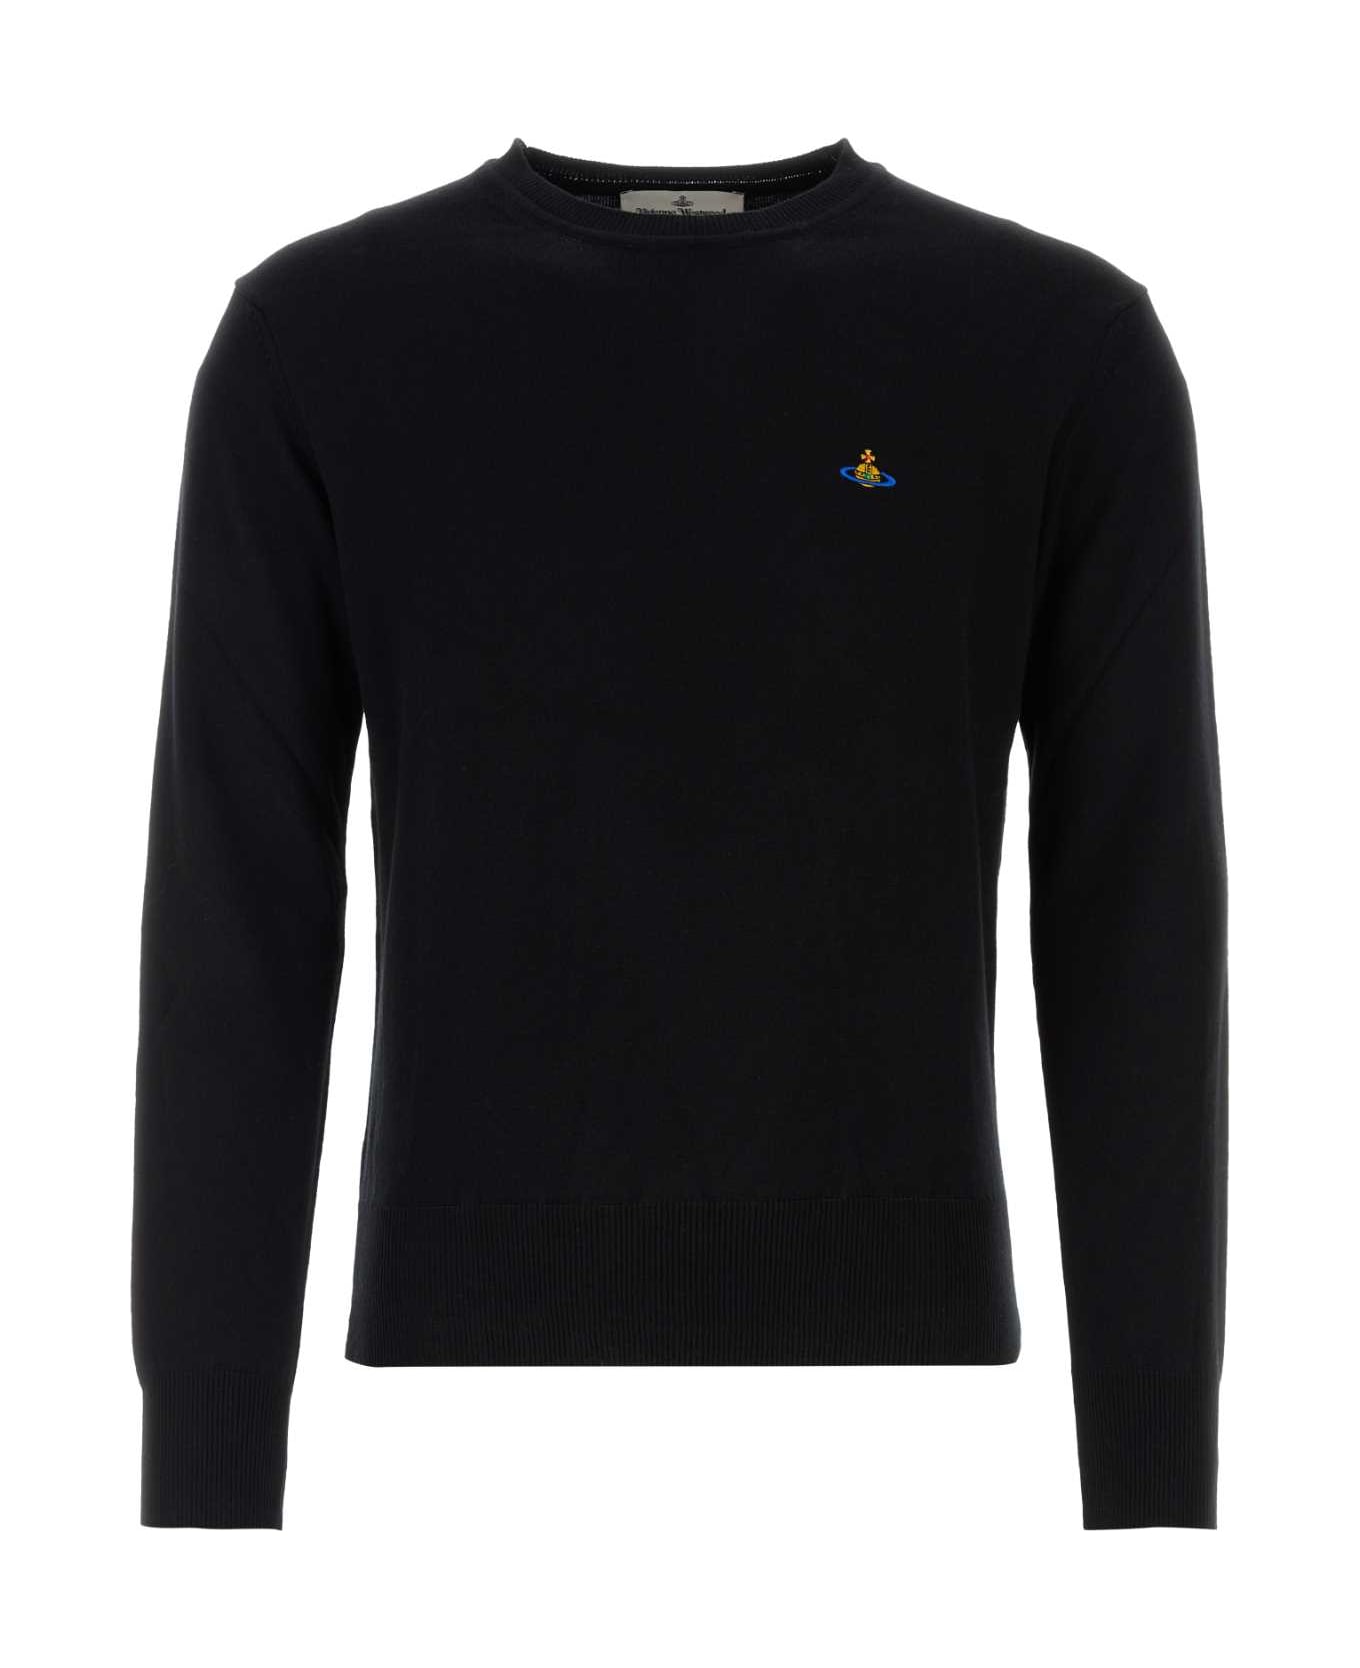 Vivienne Westwood Black Cotton Blend Sweater - Black ニットウェア